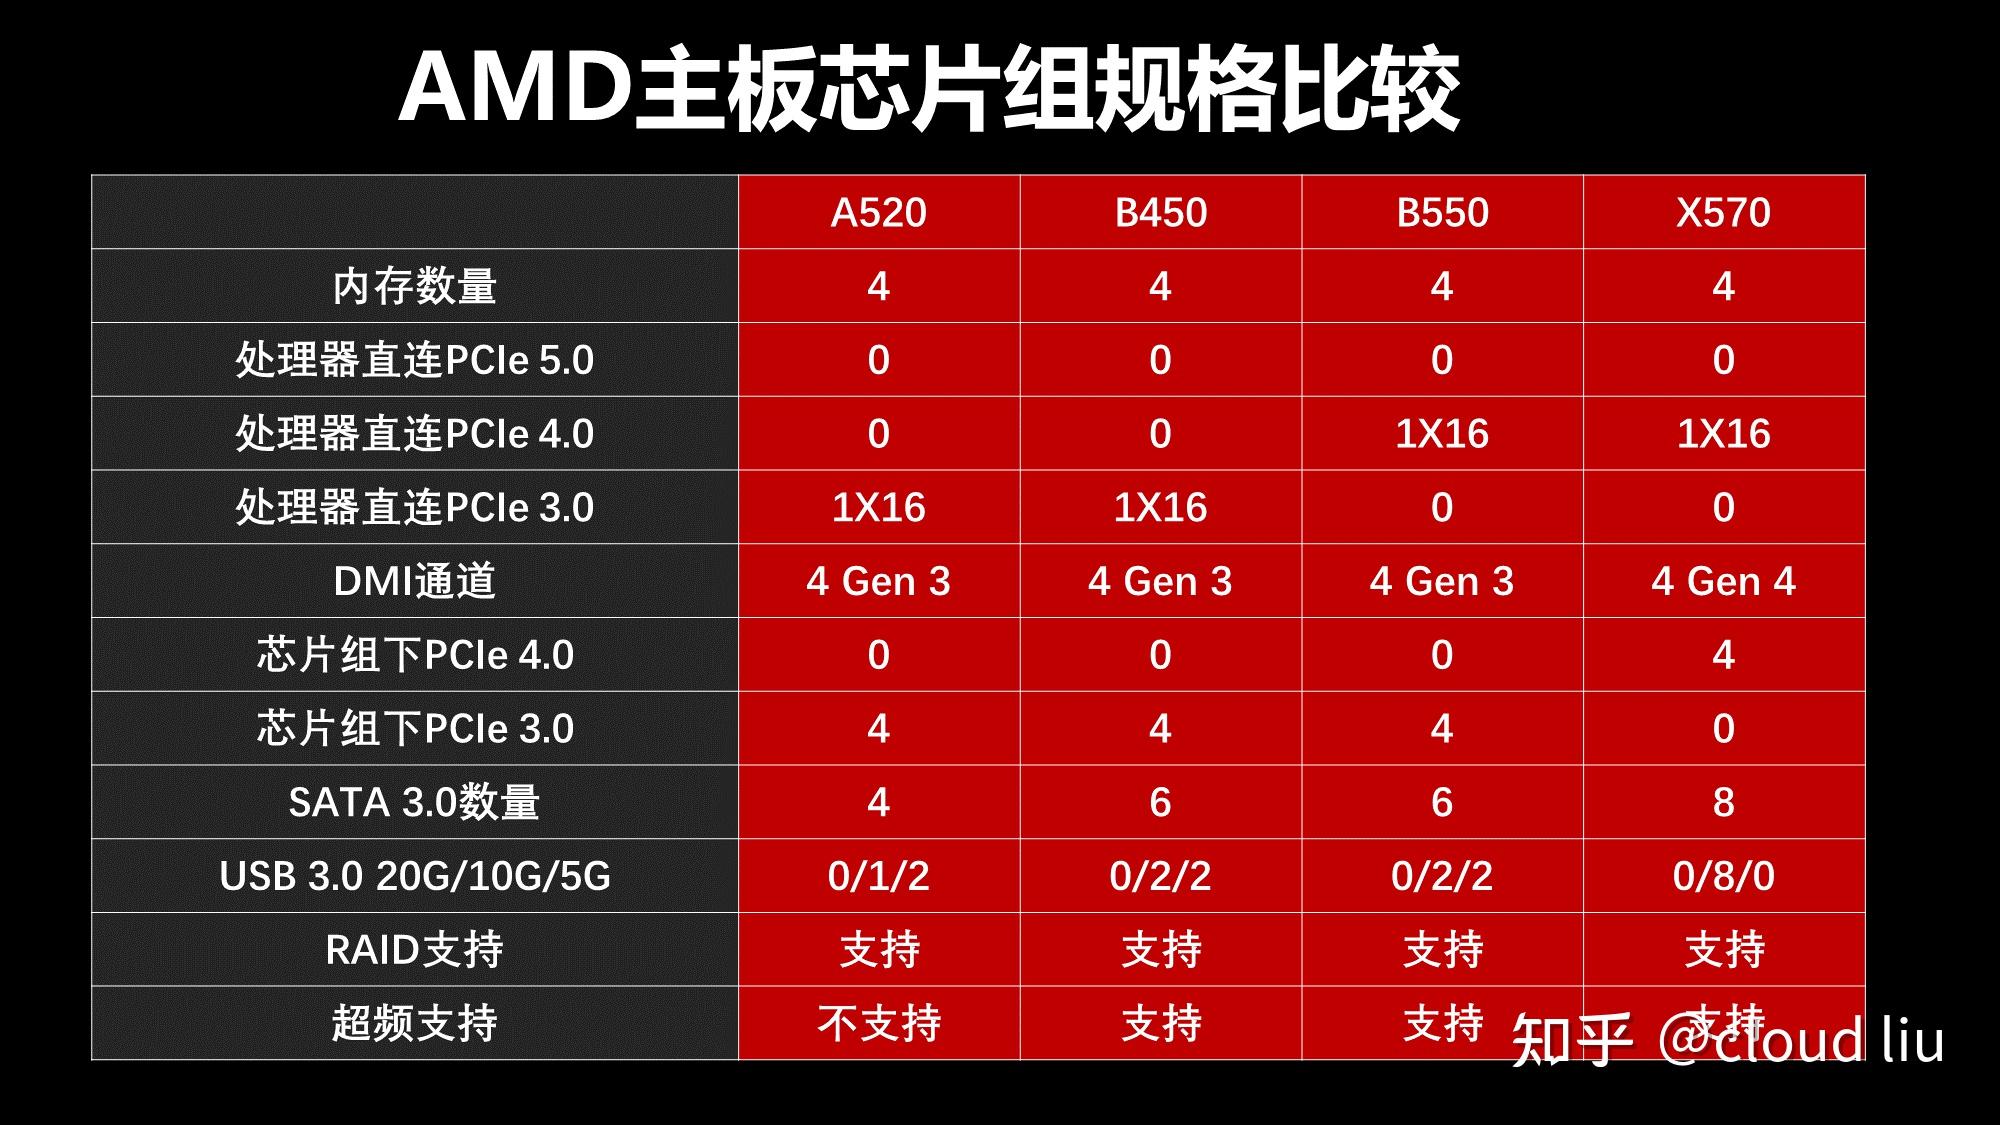 DDR3 1600MHz 2GB内存与主板的组合深度解析：规格、兼容性与性能表现  第2张